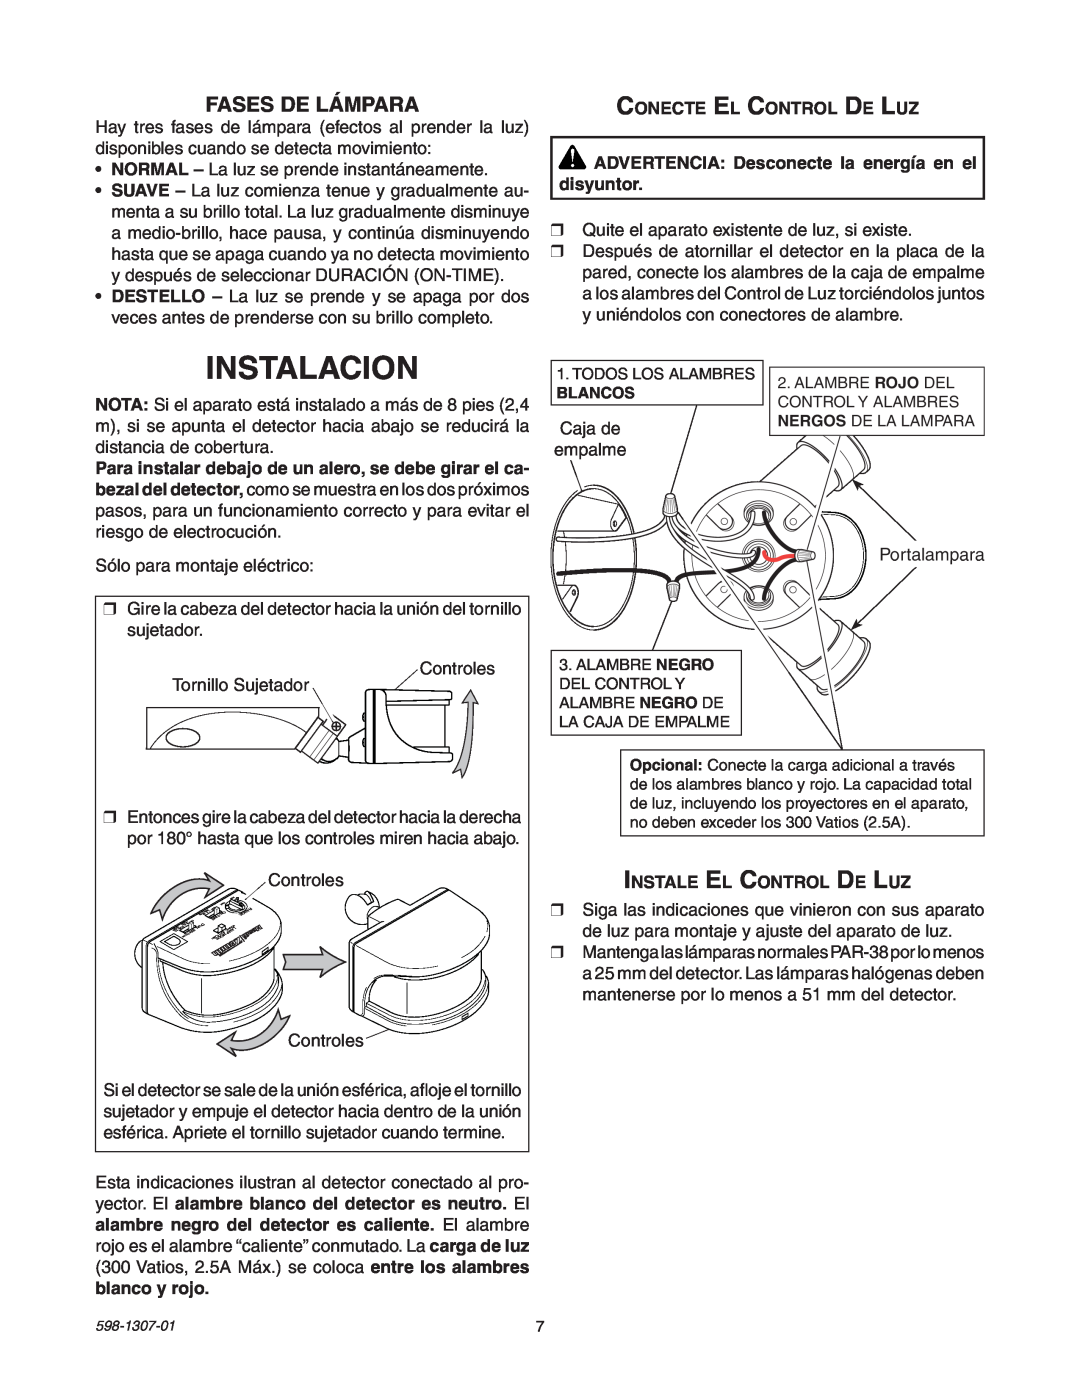 Heath Zenith 5716 manual Instalacion, Fases De Lámpara, Conecte El Control De Luz, Instale El Control De Luz 